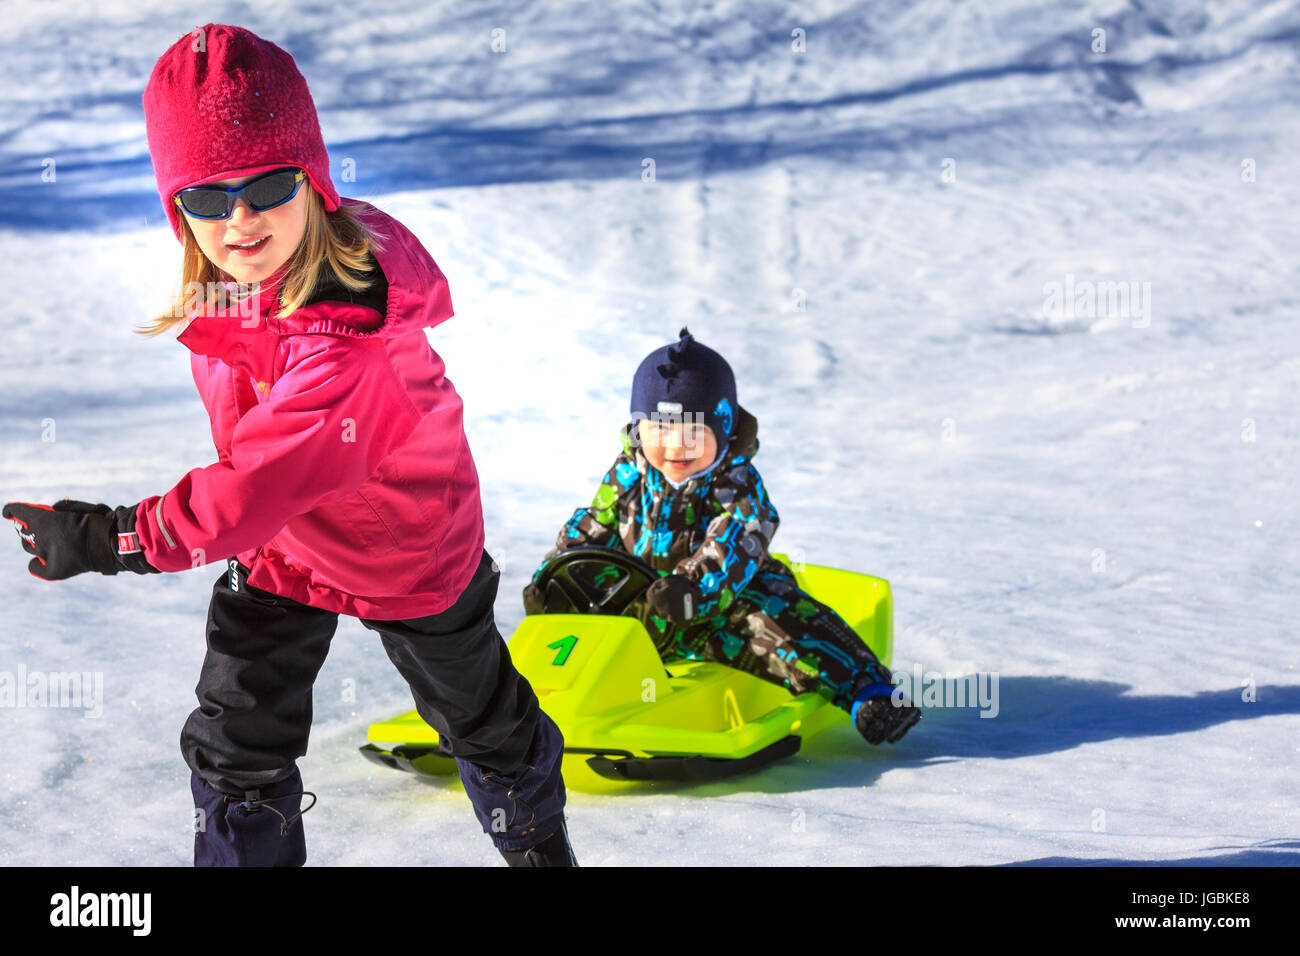 Mädchen ziehen jüngeres Kind auf gelben Rodel Schlitten, verschneite Hügel hinauf. Knackige Farben. Stockfoto